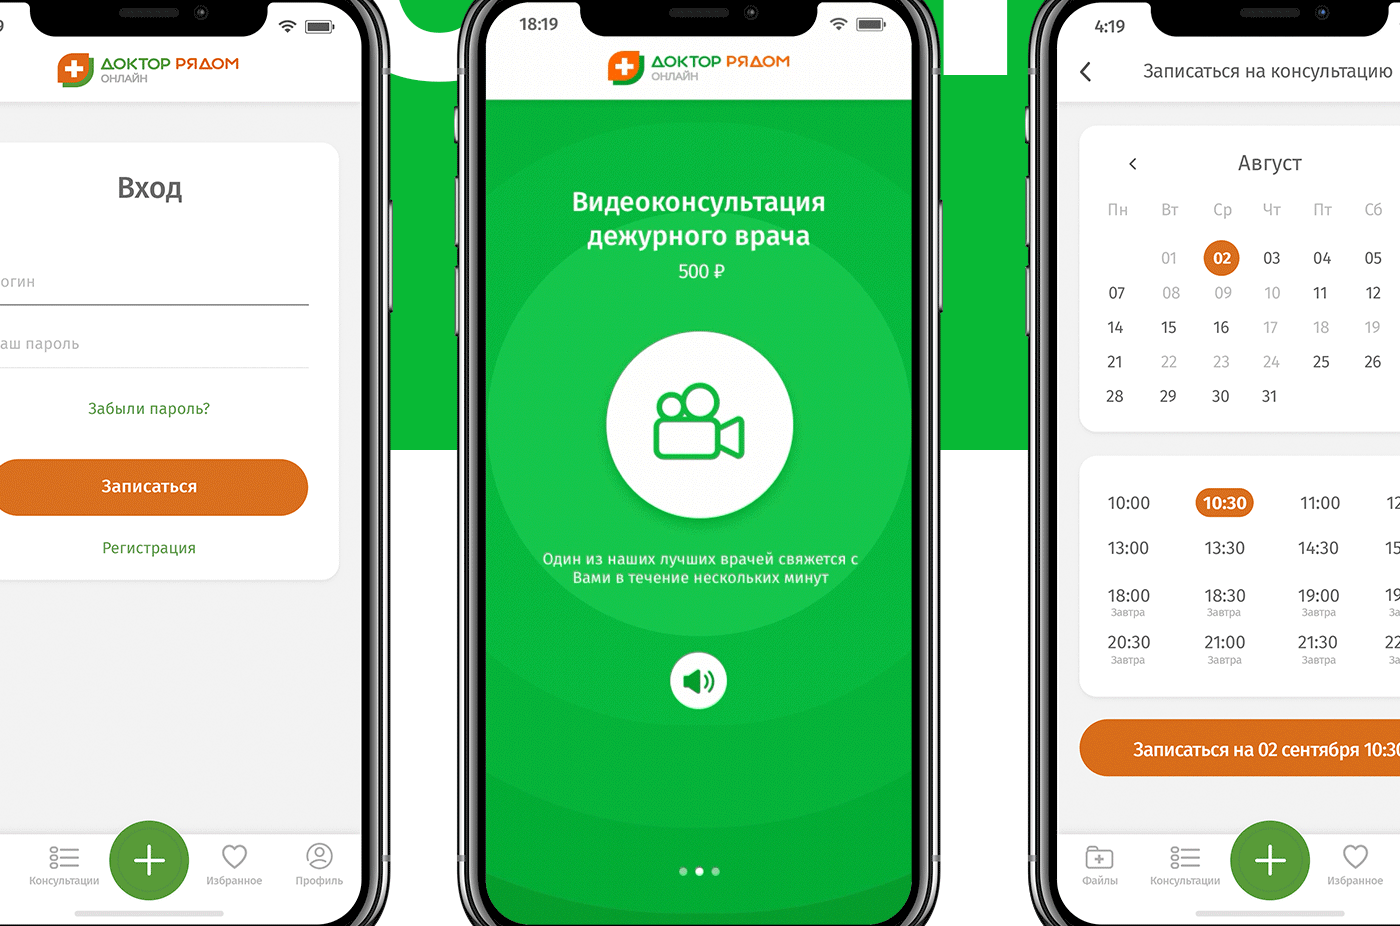 doctor iphonex TELEMEDICINE consultation app apple